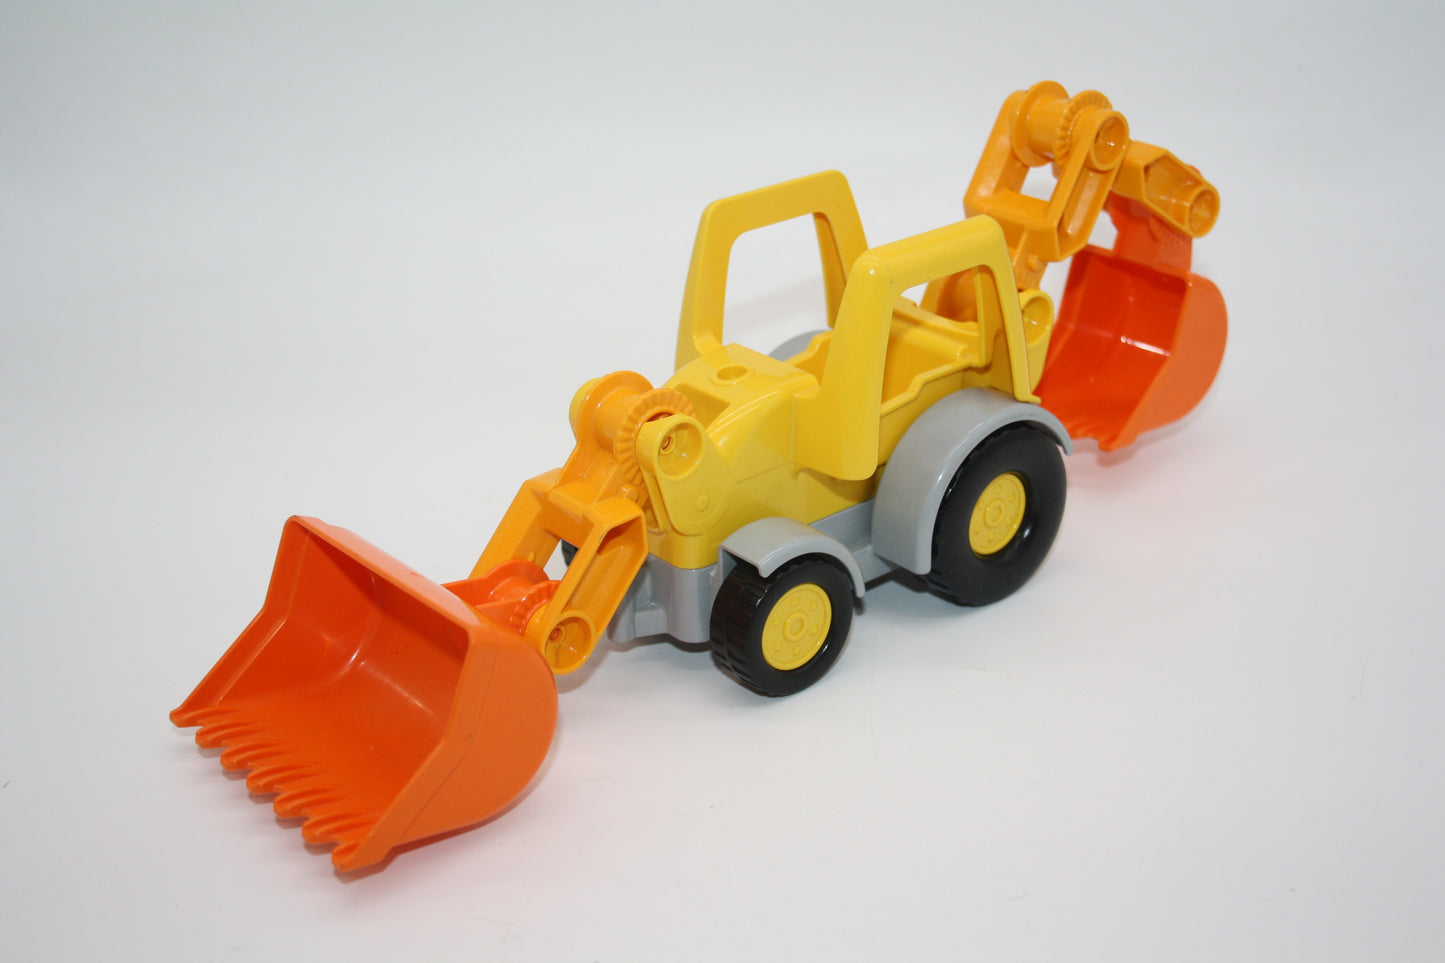 Duplo - Radlader/Bagger/Traktor m. 2 Schaufeln - gelb/orange - Baustelle - Fahrzeuge